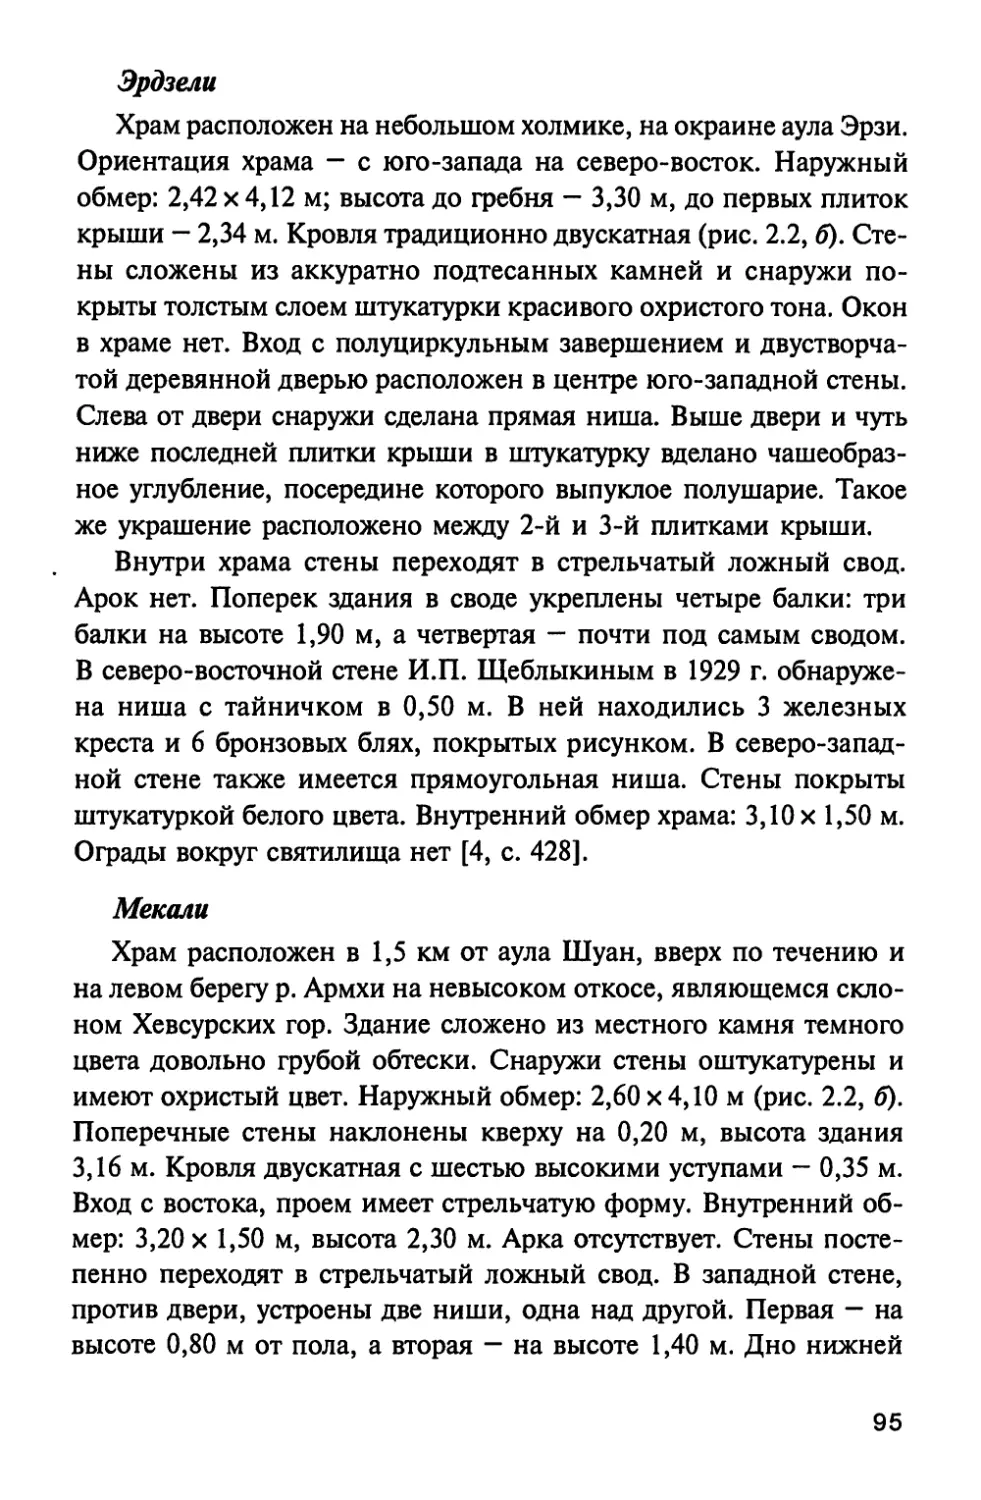 2.5. Родовые храмы XIII—XIV вв.